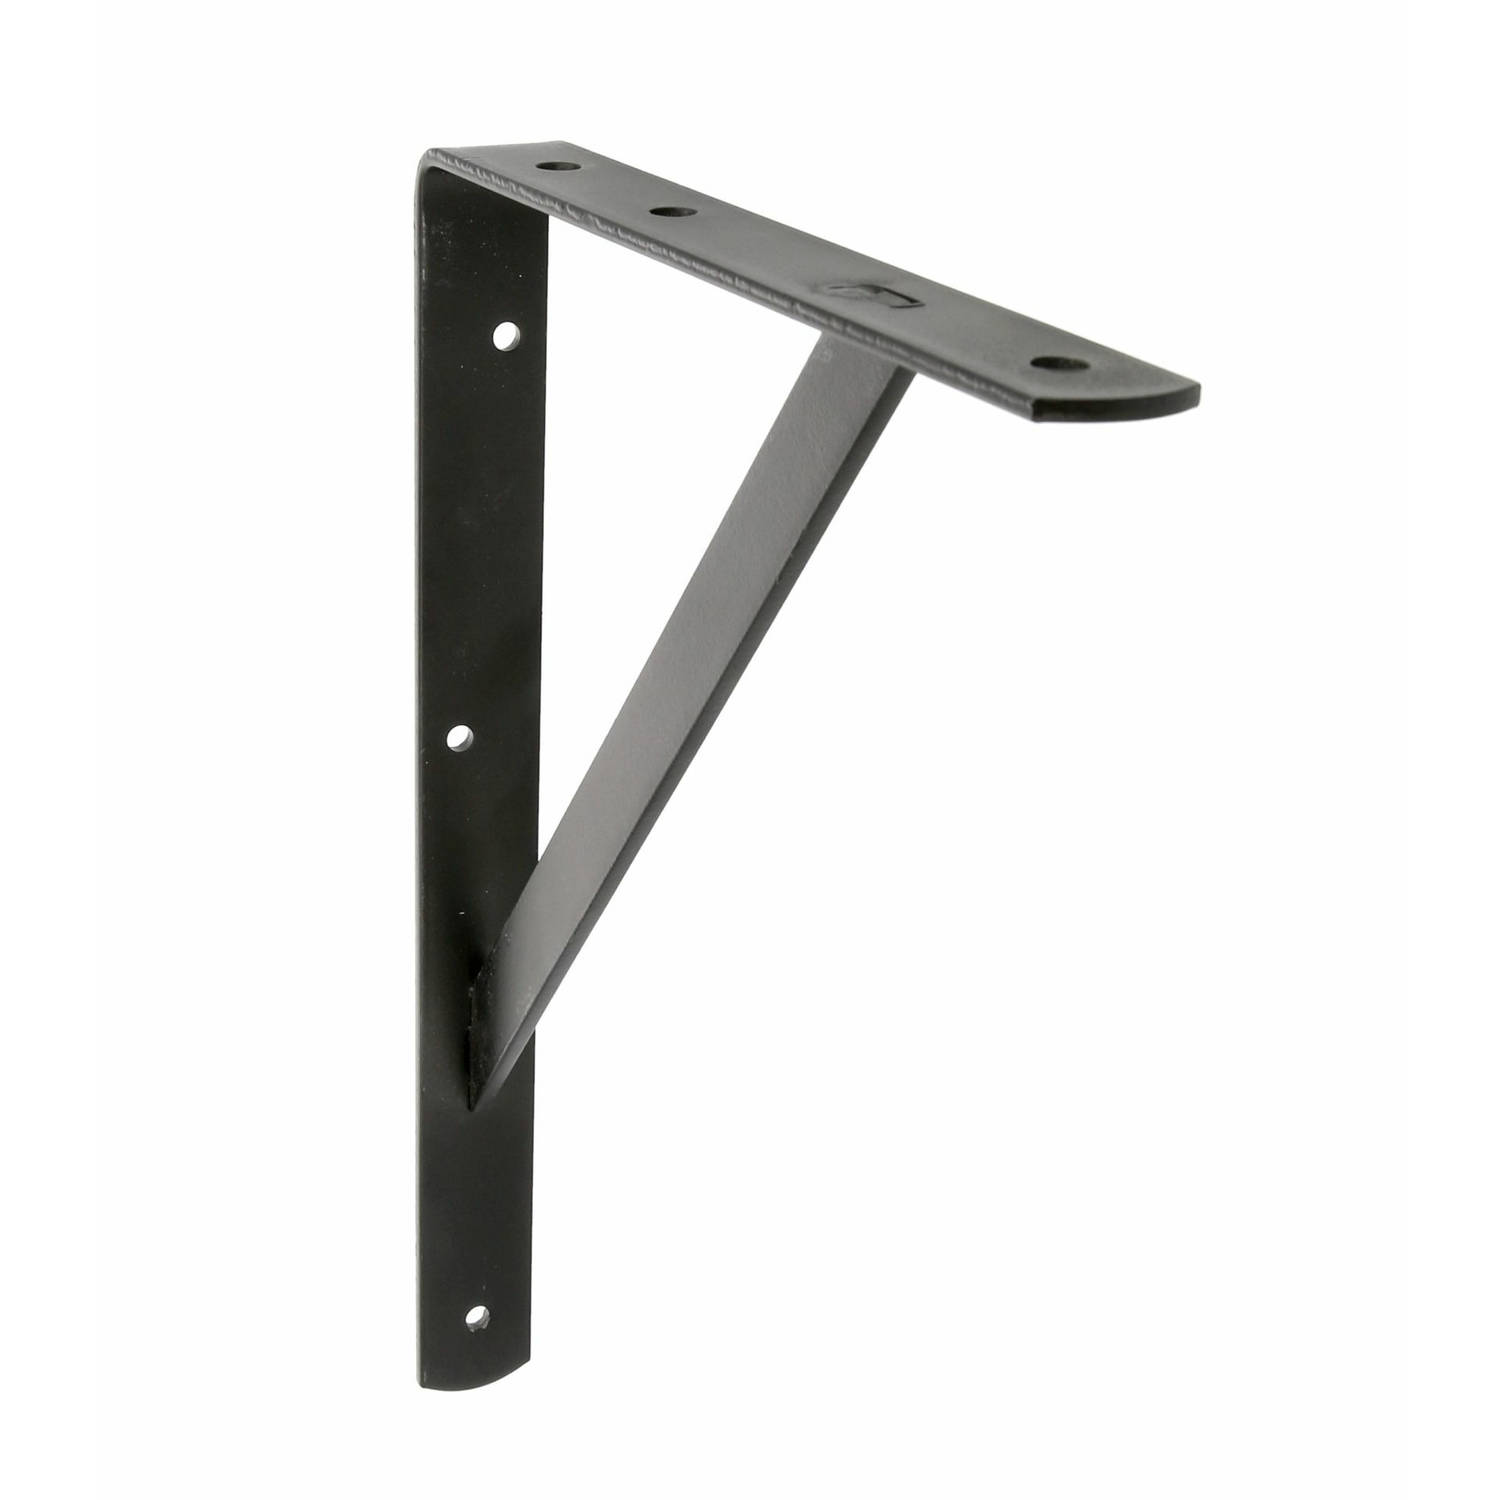 AMIG Plankdrager/planksteun van metaal - gelakt zwart - H500 x B325 mm - boekenplank steunen - tot 185 kg